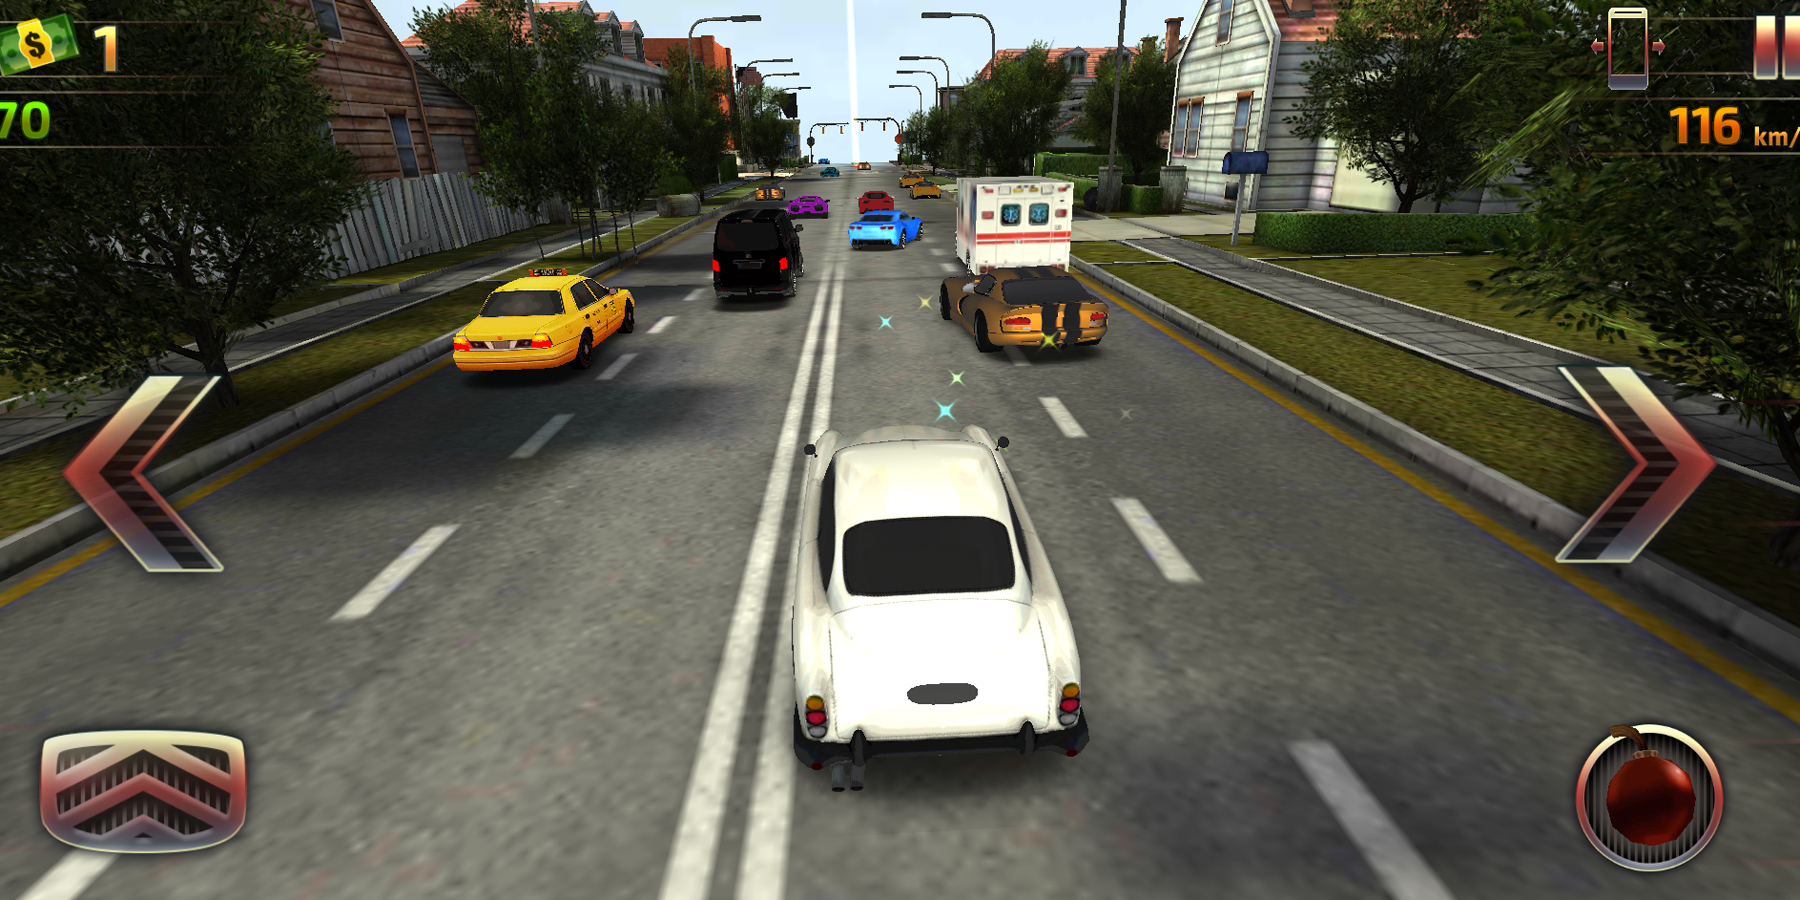 Screenshot 1 of Mengemudi Mobil: Balap Kecepatan Tinggi 1.0.0